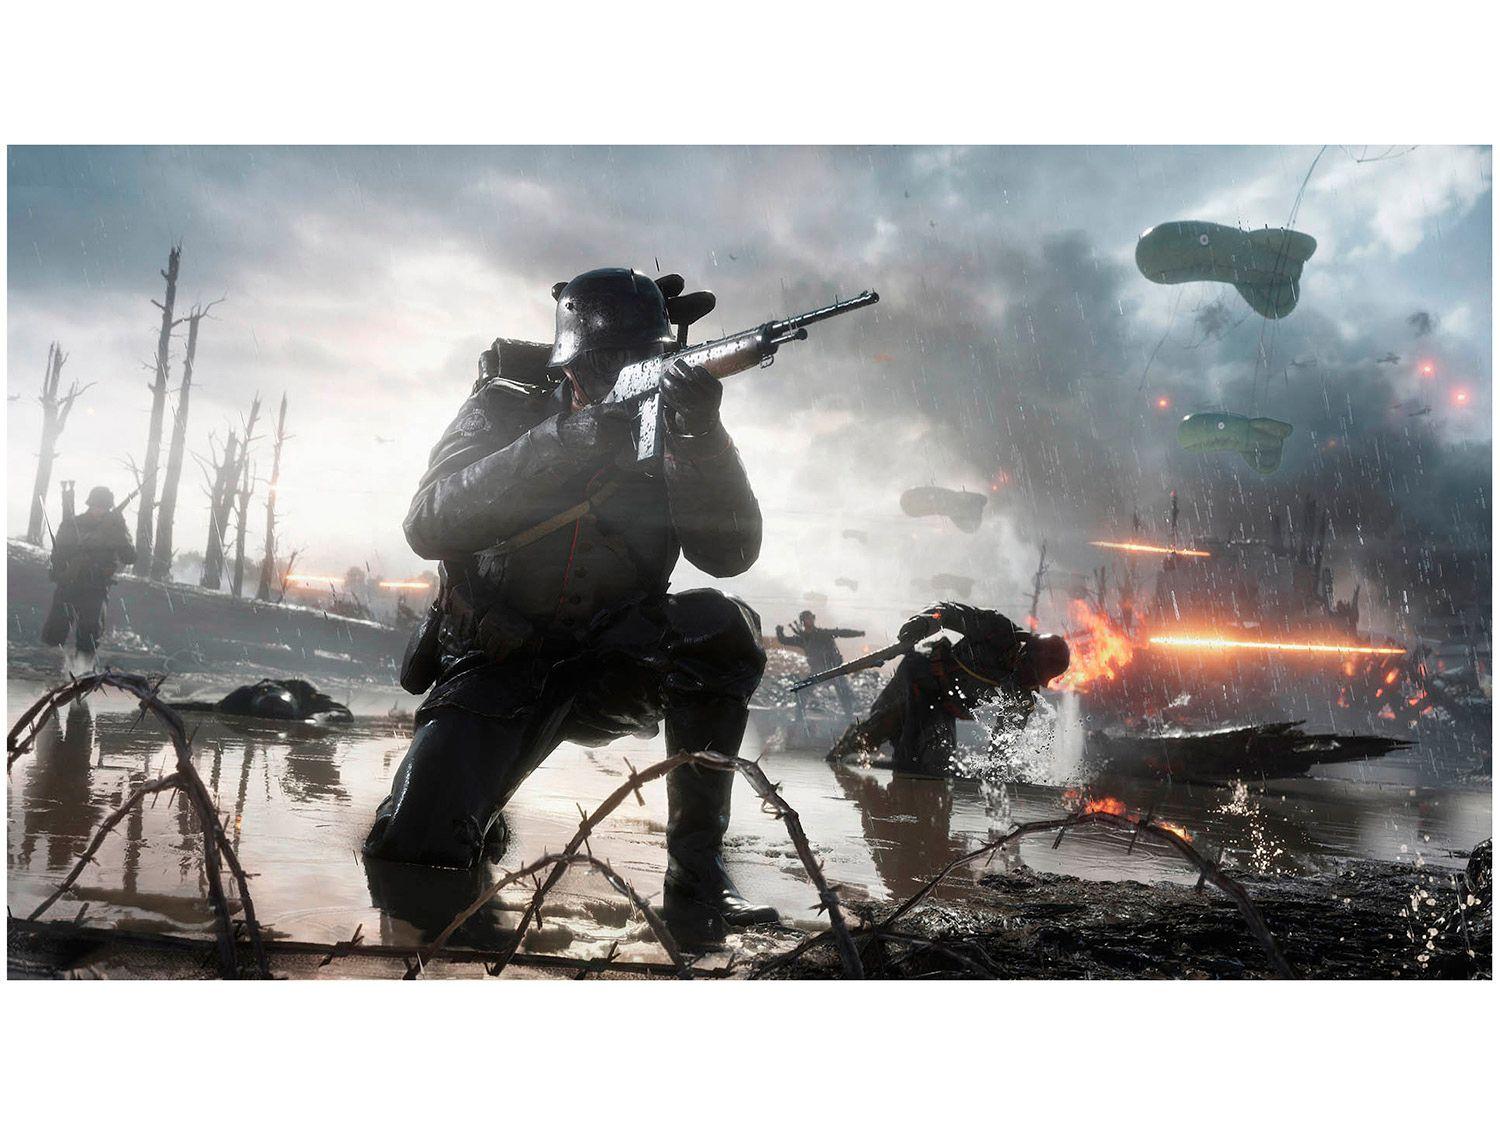 Battlefield 1 Revolution - Pacote Premium - PlayStation 4